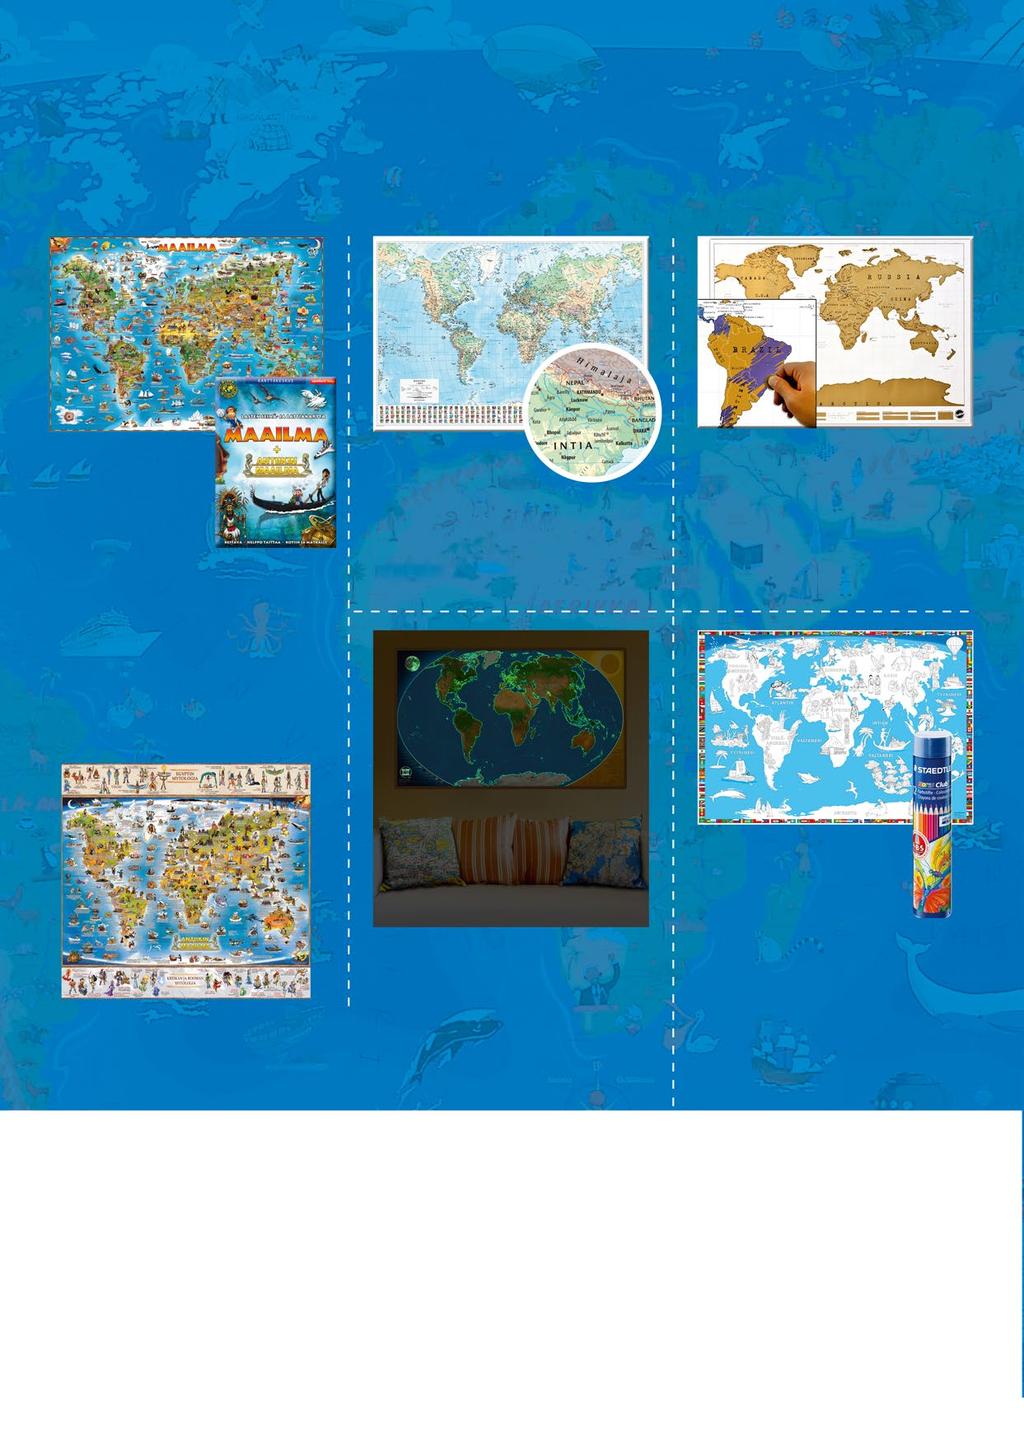 Seinäkartat 30 Seinäkartoilla maailma järjestykseen Karttakeskuksen valikoimissa on runsaasti seinäkarttoja sekä Suomesta että maailmalta.